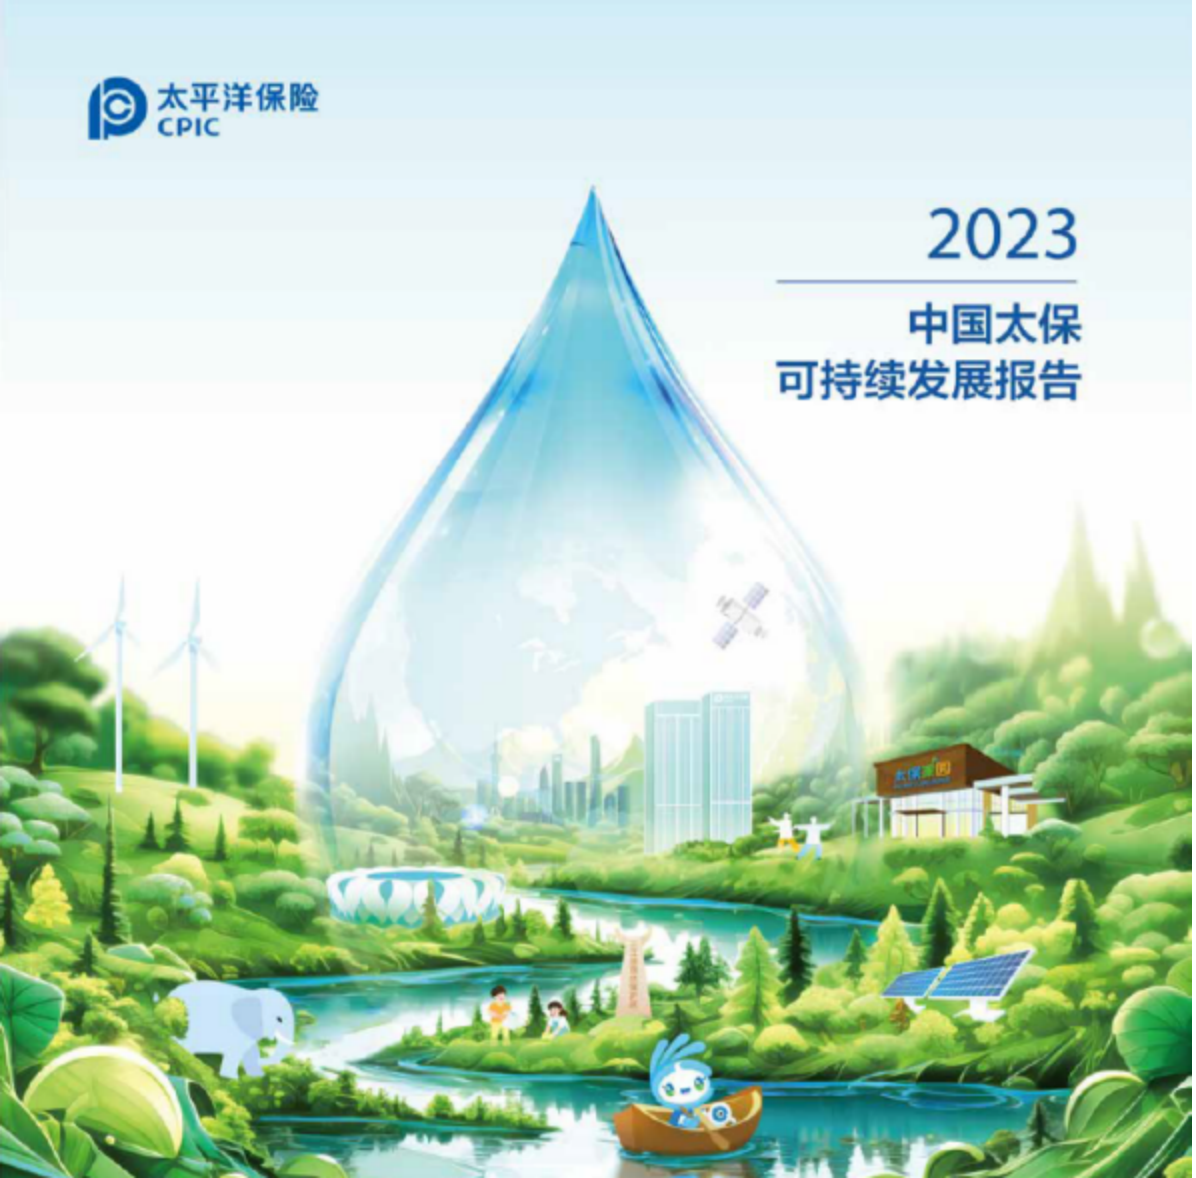 接续前行 共赴美好 中国太保发布2023年可持续发展报告